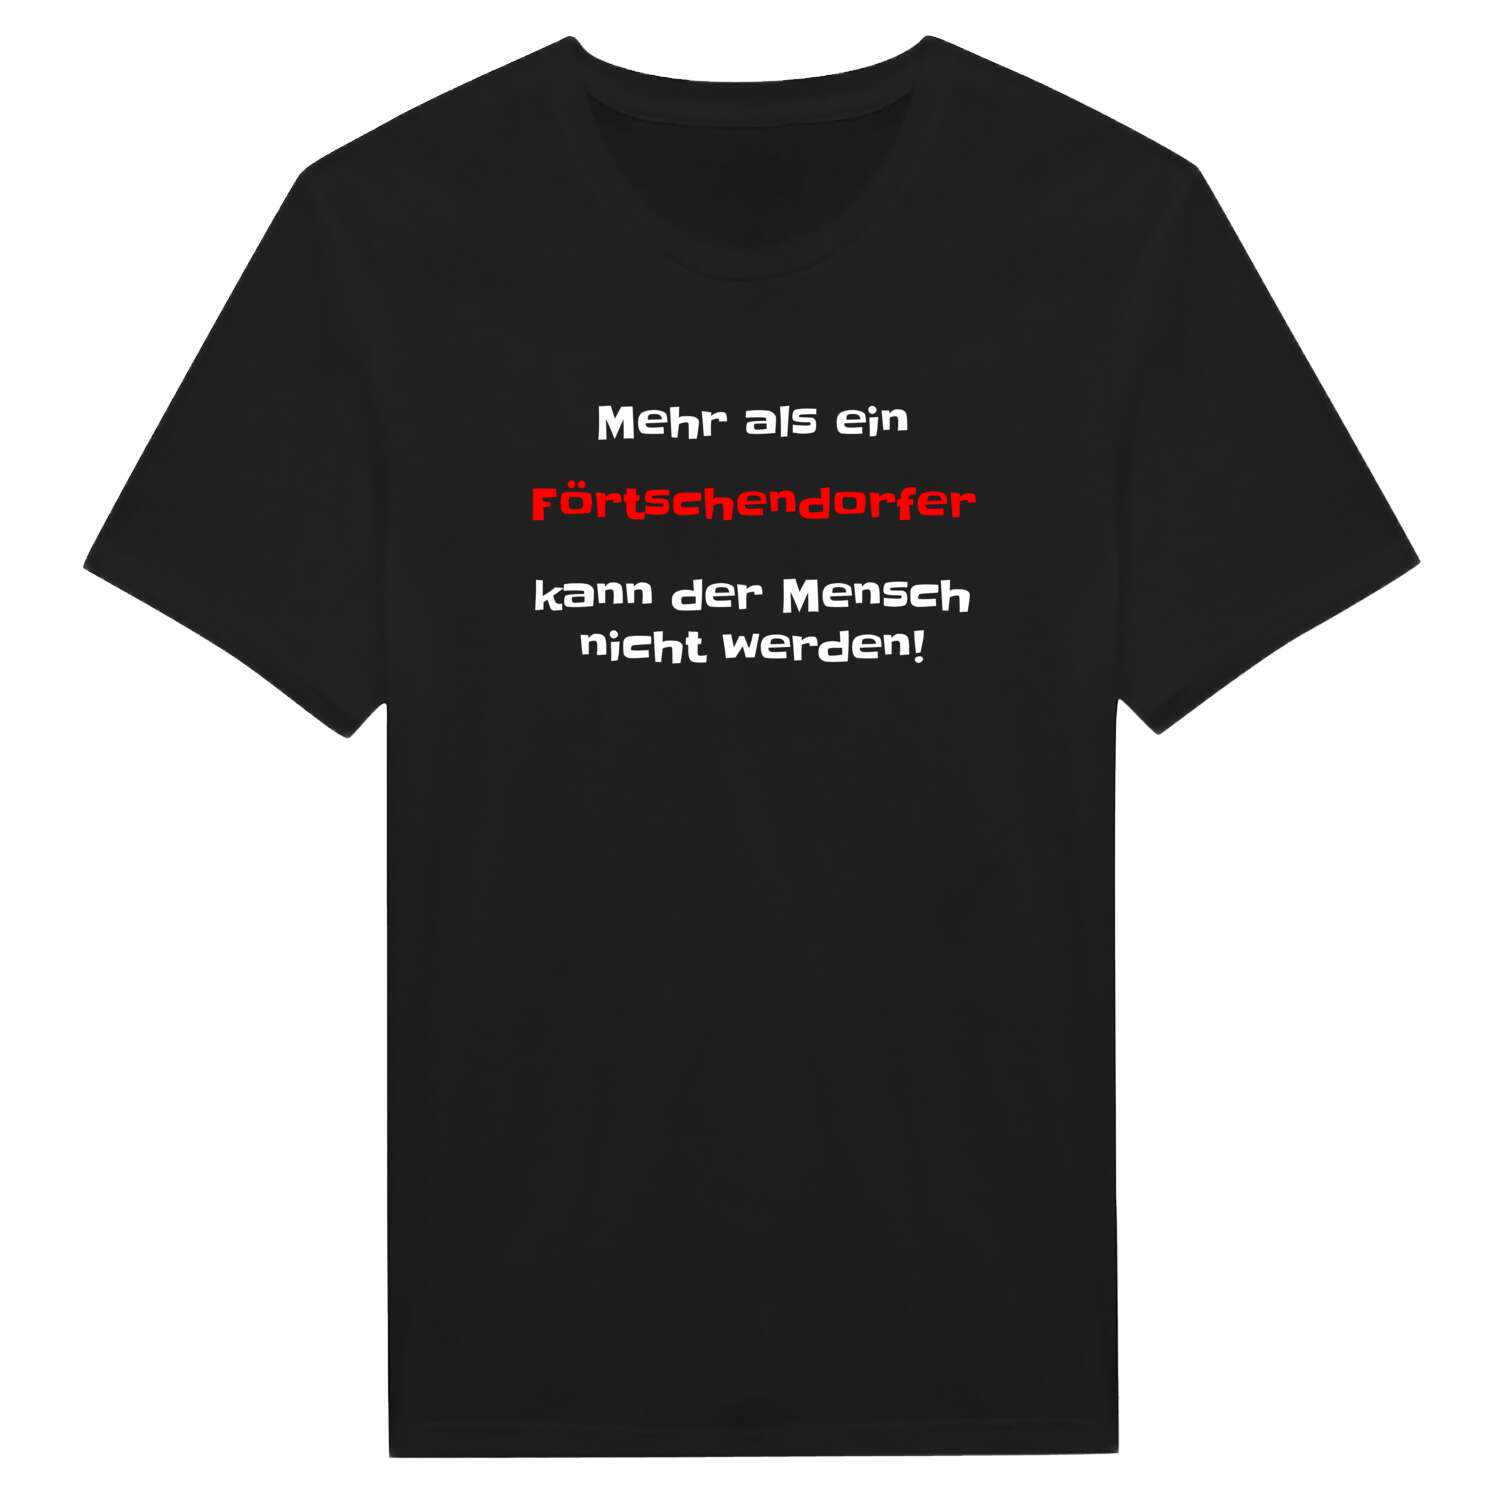 Förtschendorf T-Shirt »Mehr als ein«